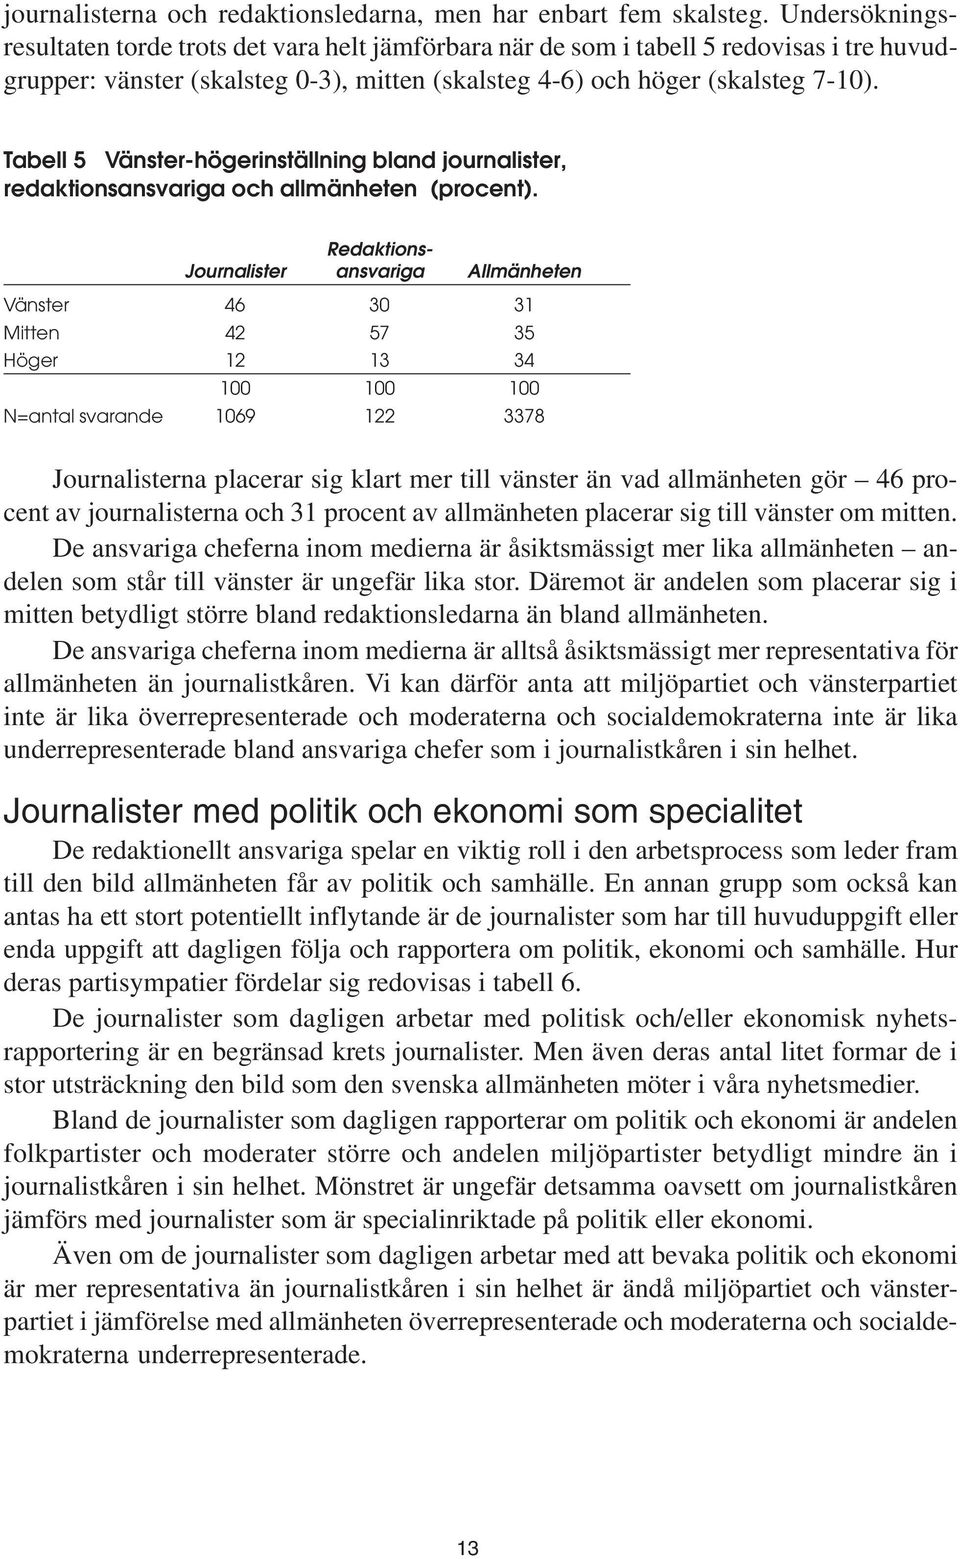 Tabell 5 Vänster-högerinställning bland journalister, redaktionsansvariga och allmänheten (procent).